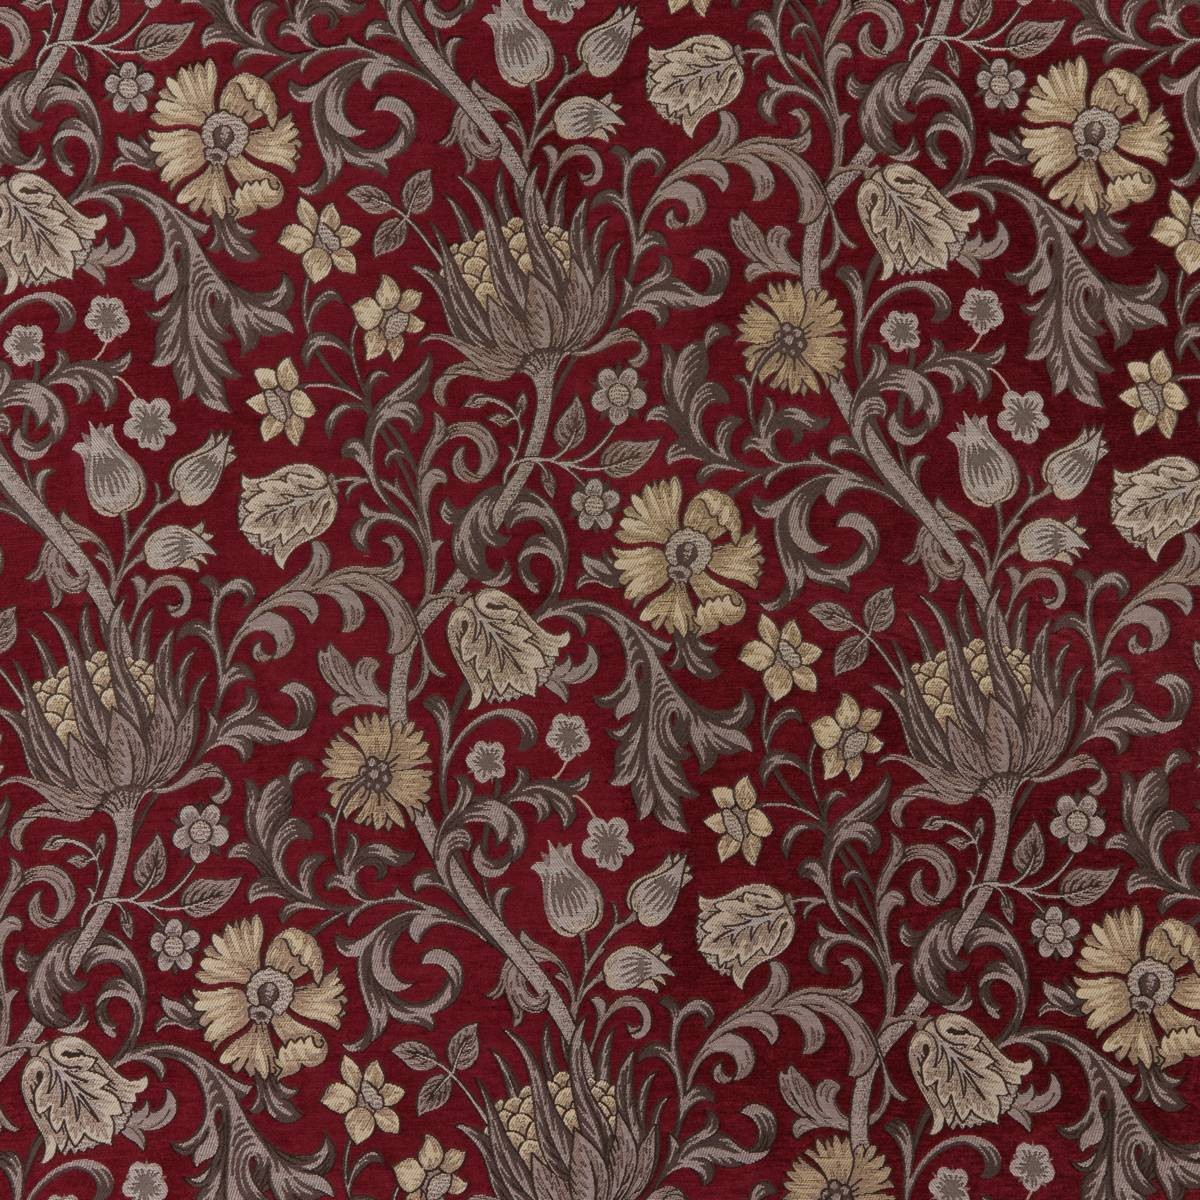 Morris XVI Fabric by Britannia Rose